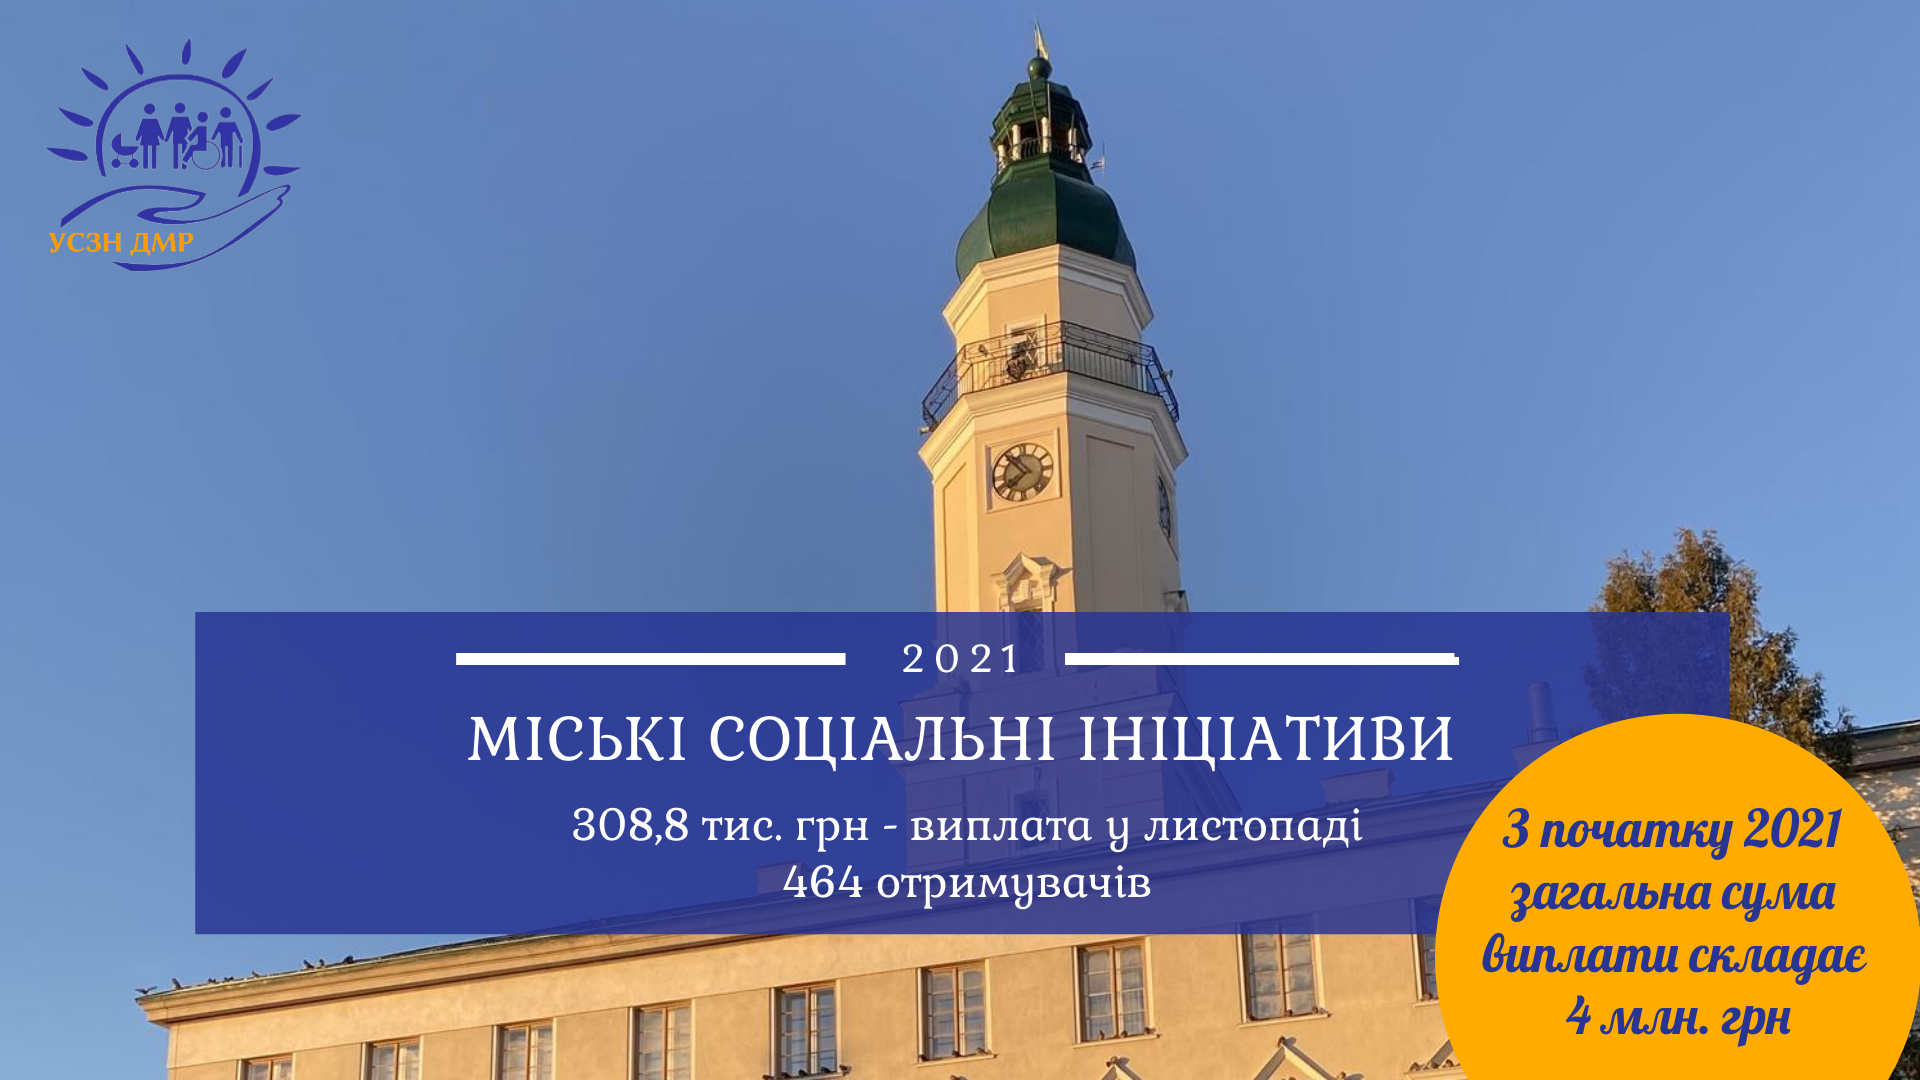 Міські соціальні ініціативи: 308,8 тис. грн перераховано для 464 мешканців Дрогобицької громади у листопаді 2021р.